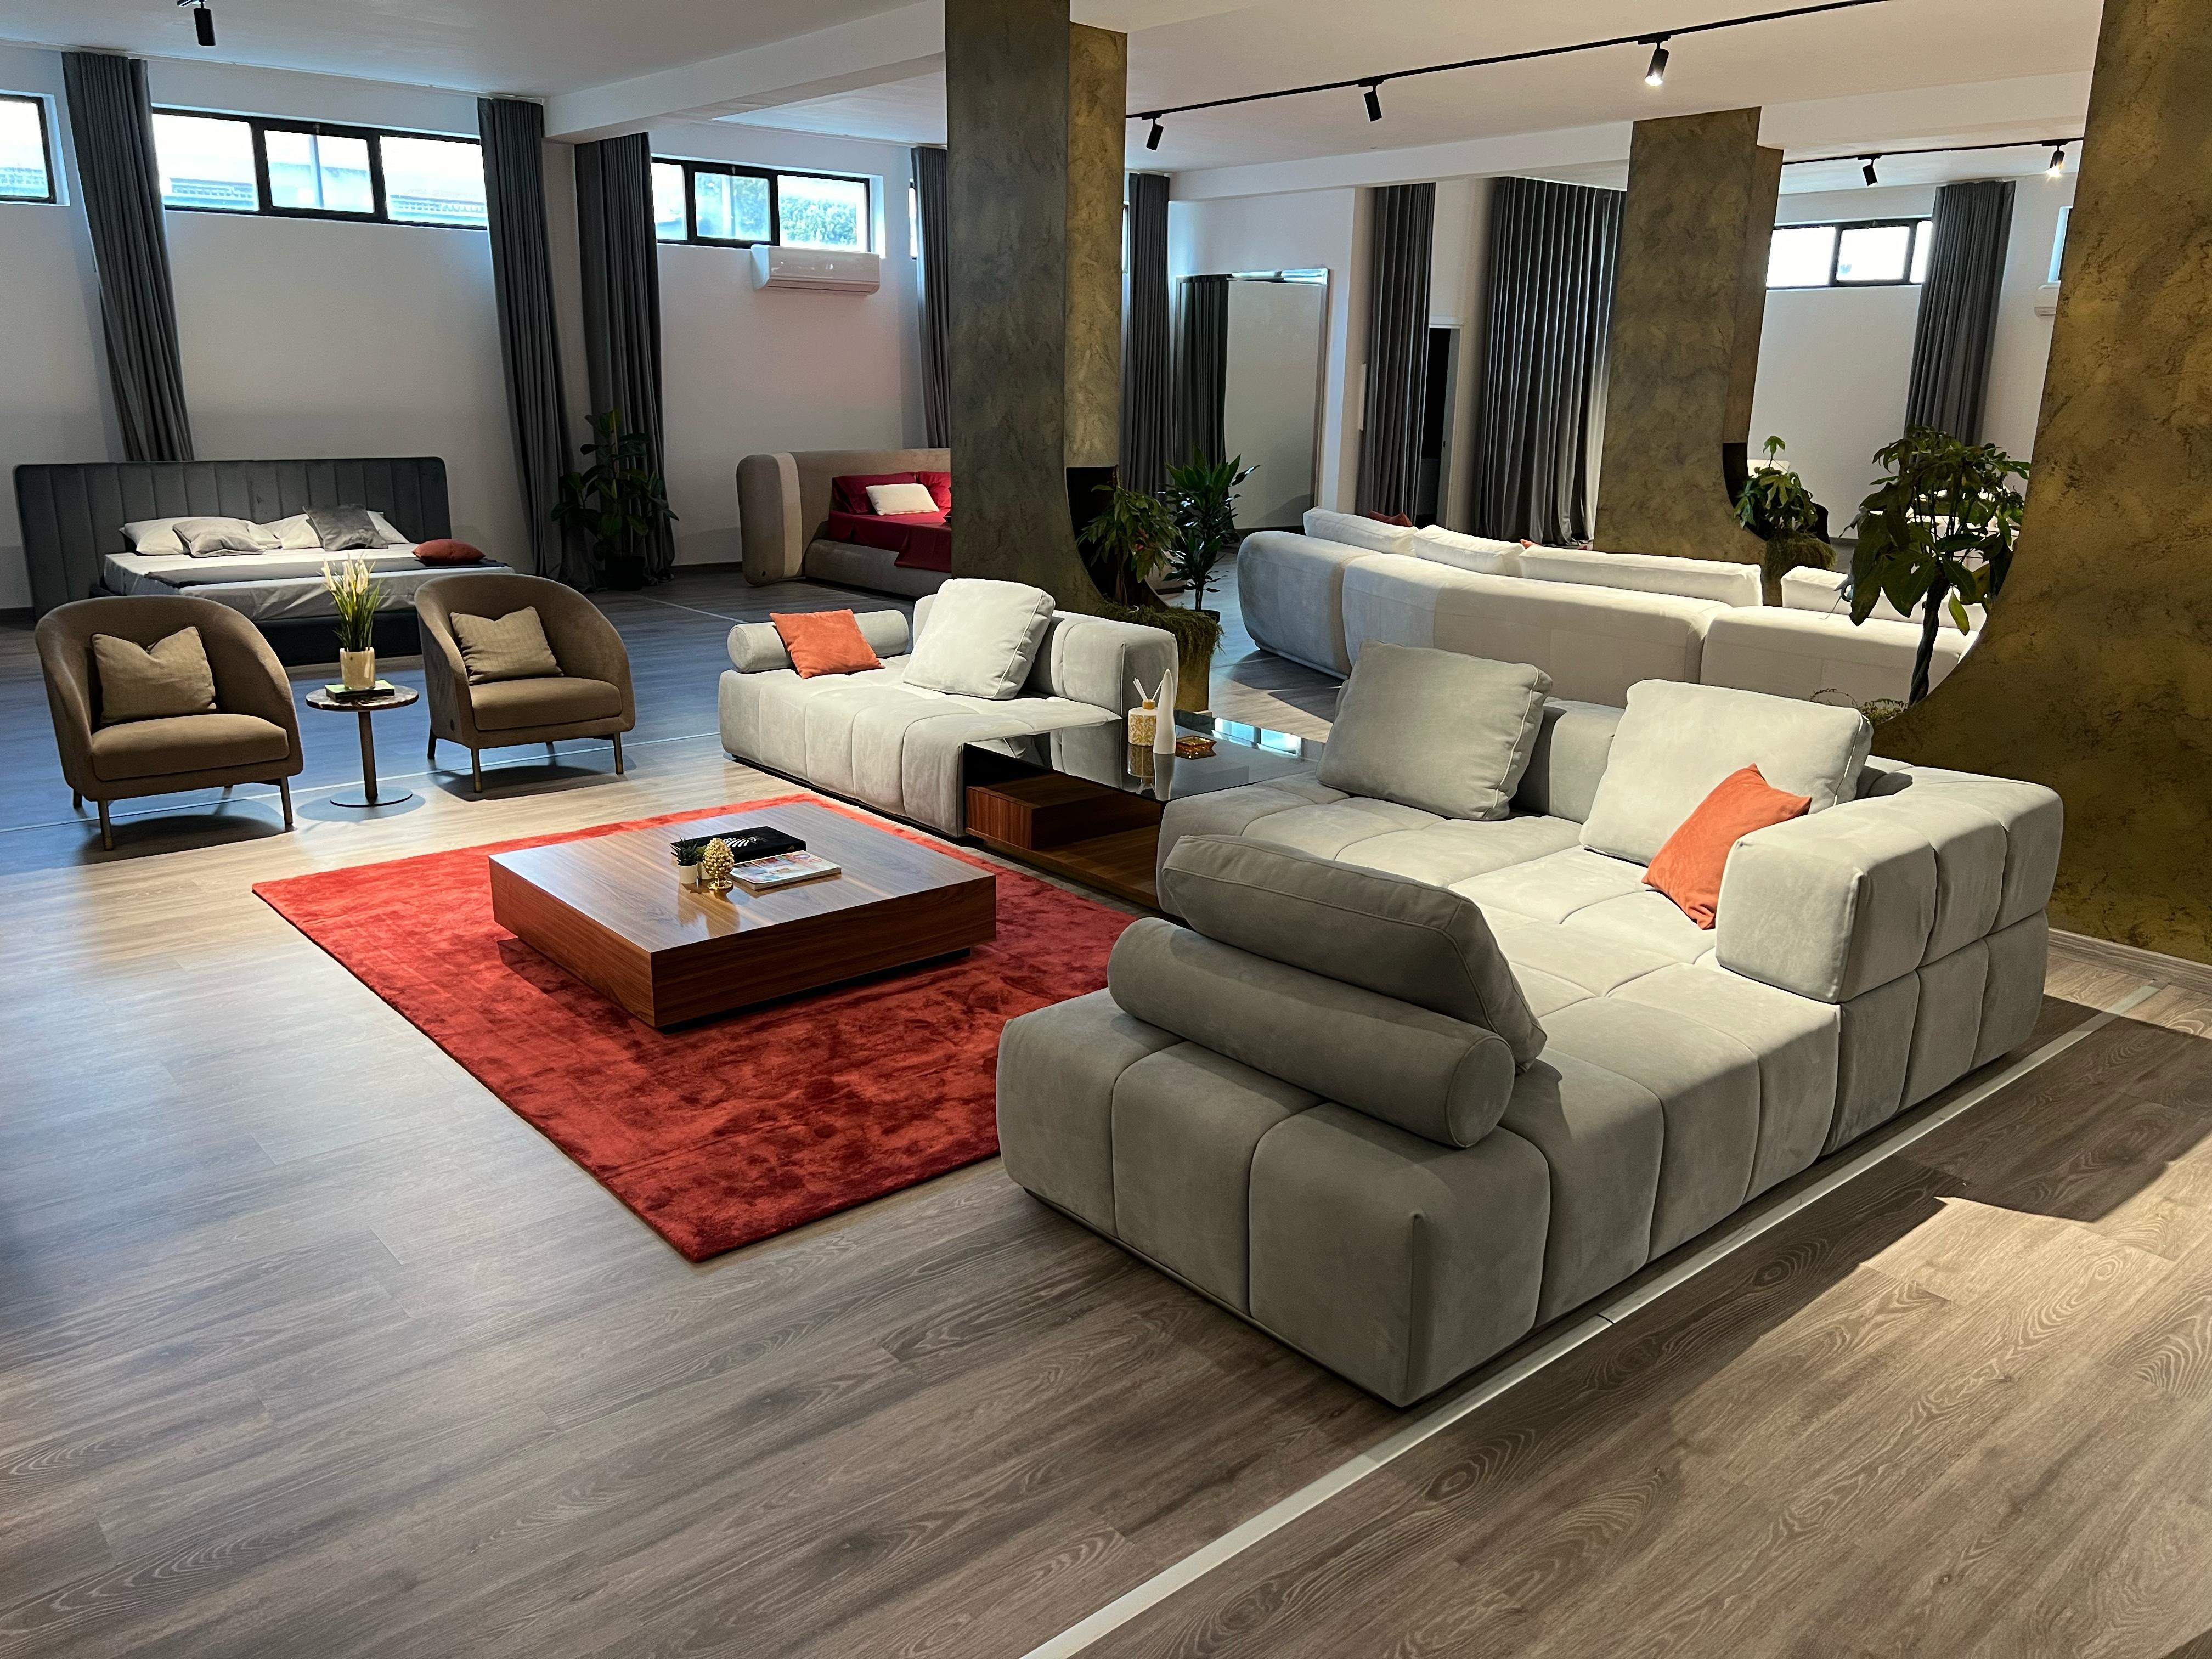 Dieses unendlich modulare Sofa bietet Ihnen die Möglichkeit, seine Zusammensetzung nach Ihrem Geschmack zu verändern. Als würde man mit einem Lego spielen. Das petrolfarbene Nubukledersofa ist genau der richtige Hauch von Eleganz für Ihr Wohnzimmer.